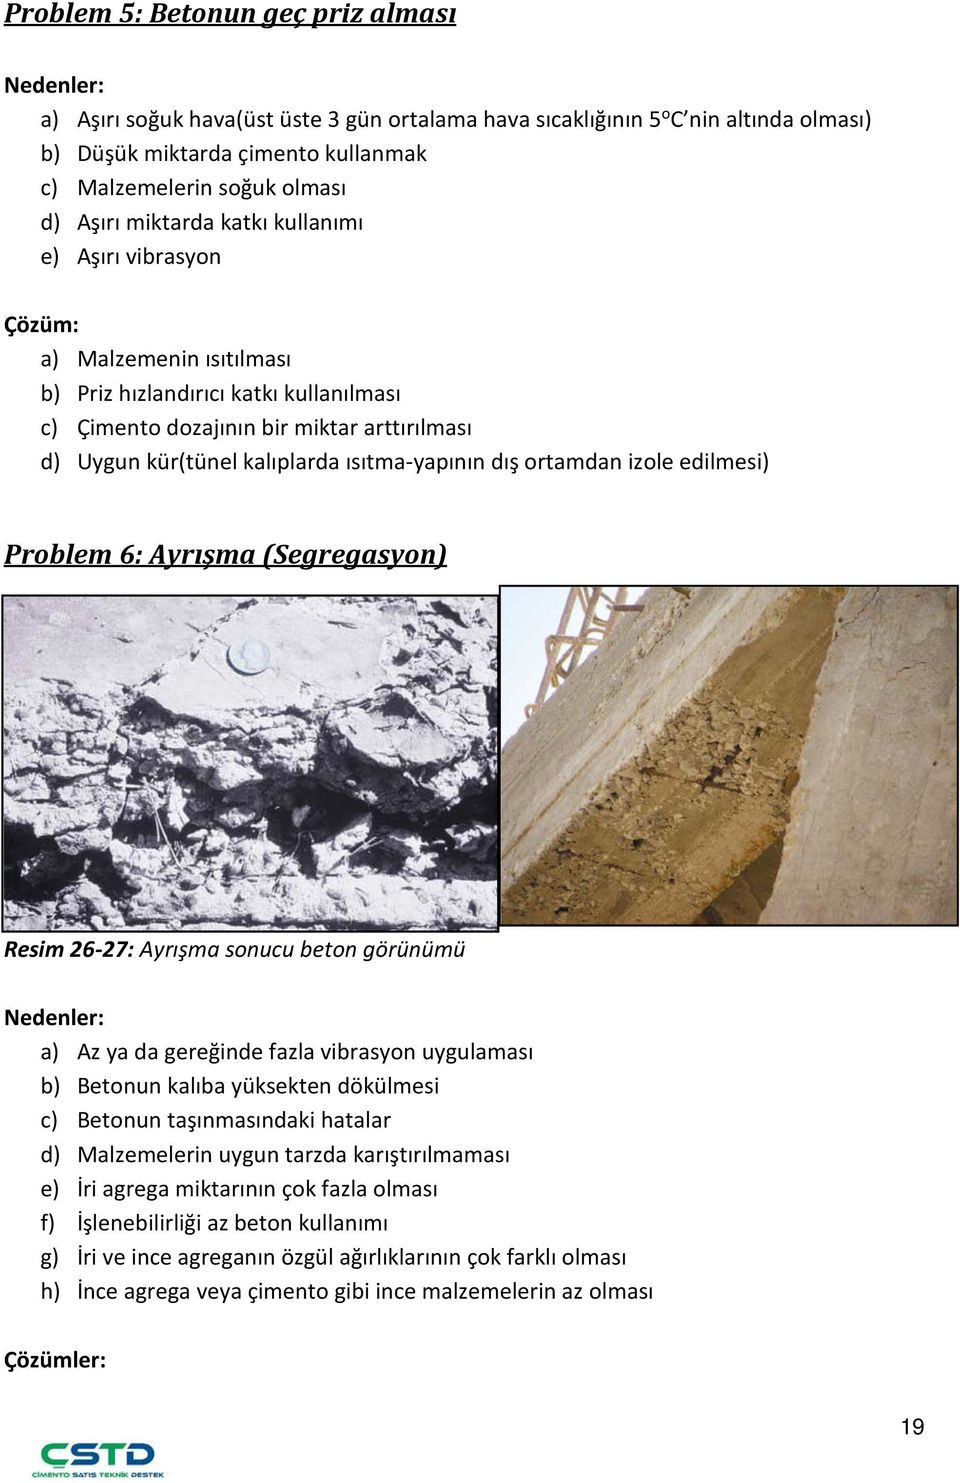 ısıtma-yapının dış ortamdan izole edilmesi) Problem 6: Ayrışma (Segregasyon) Resim 26-27: Ayrışma sonucu beton görünümü a) Az ya da gereğinde fazla vibrasyon uygulaması b) Betonun kalıba yüksekten